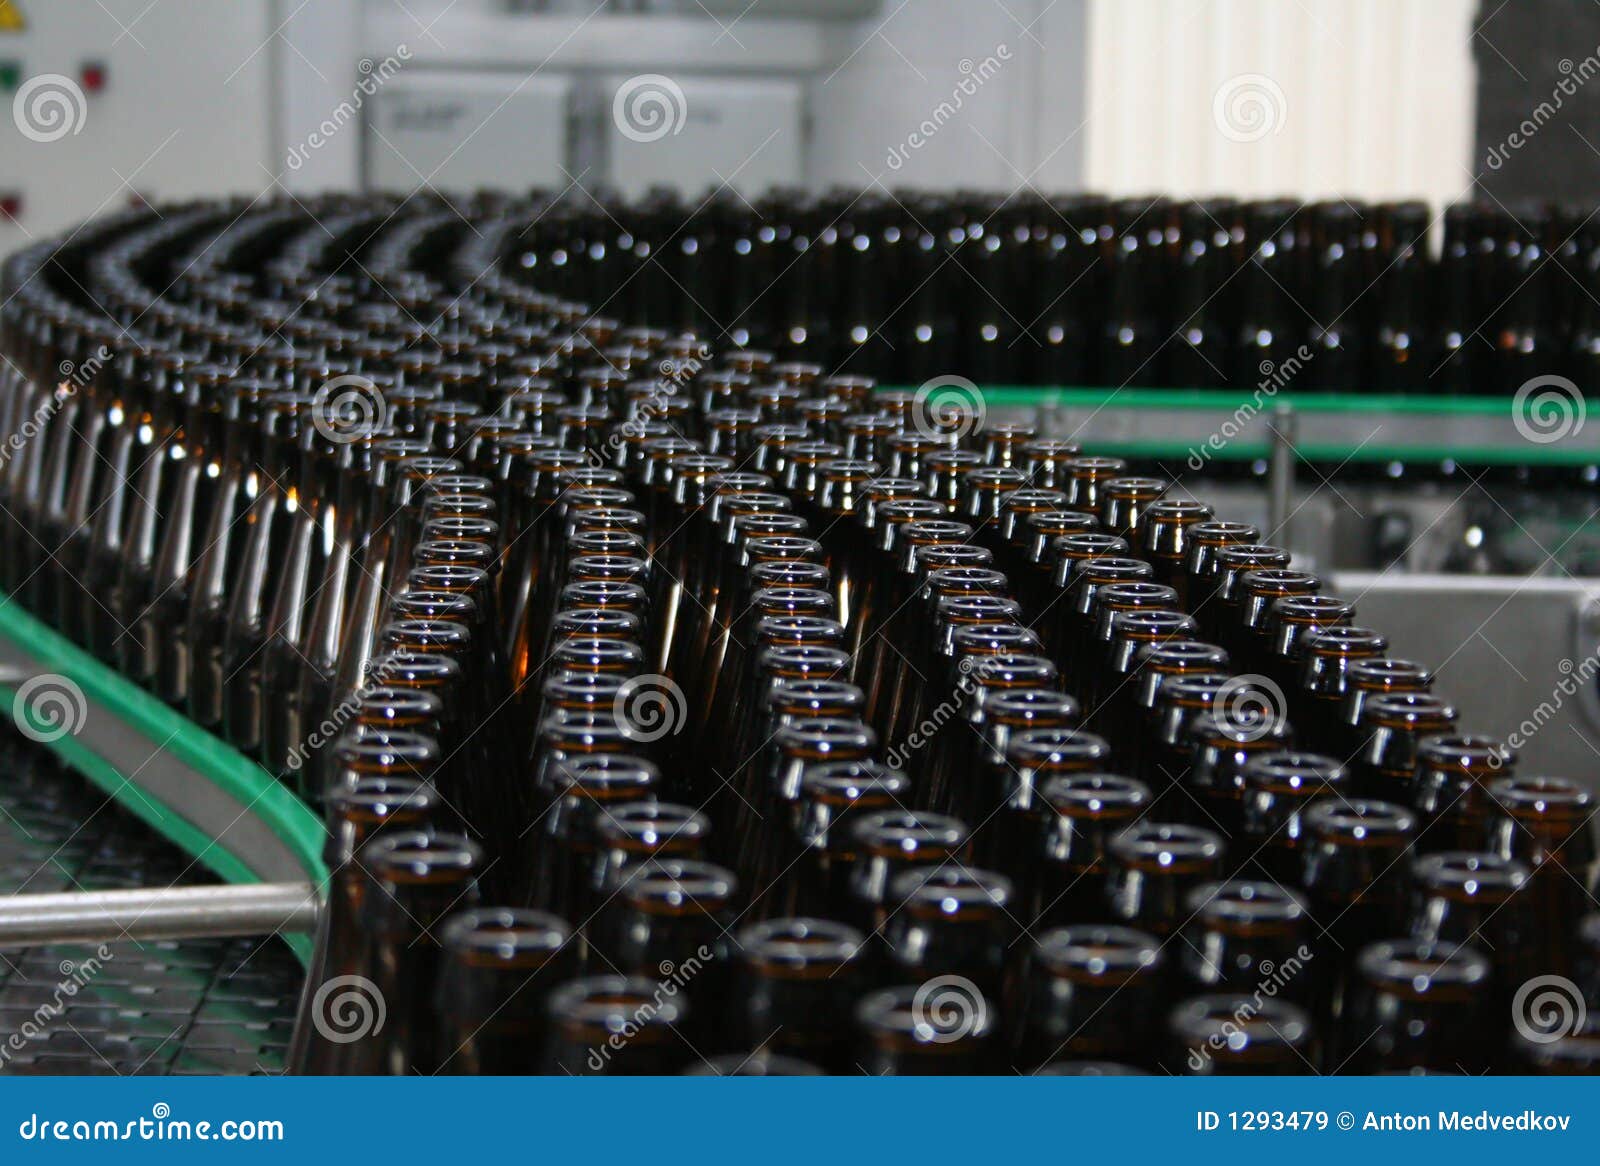 bottle-conveyor-1293479.jpg